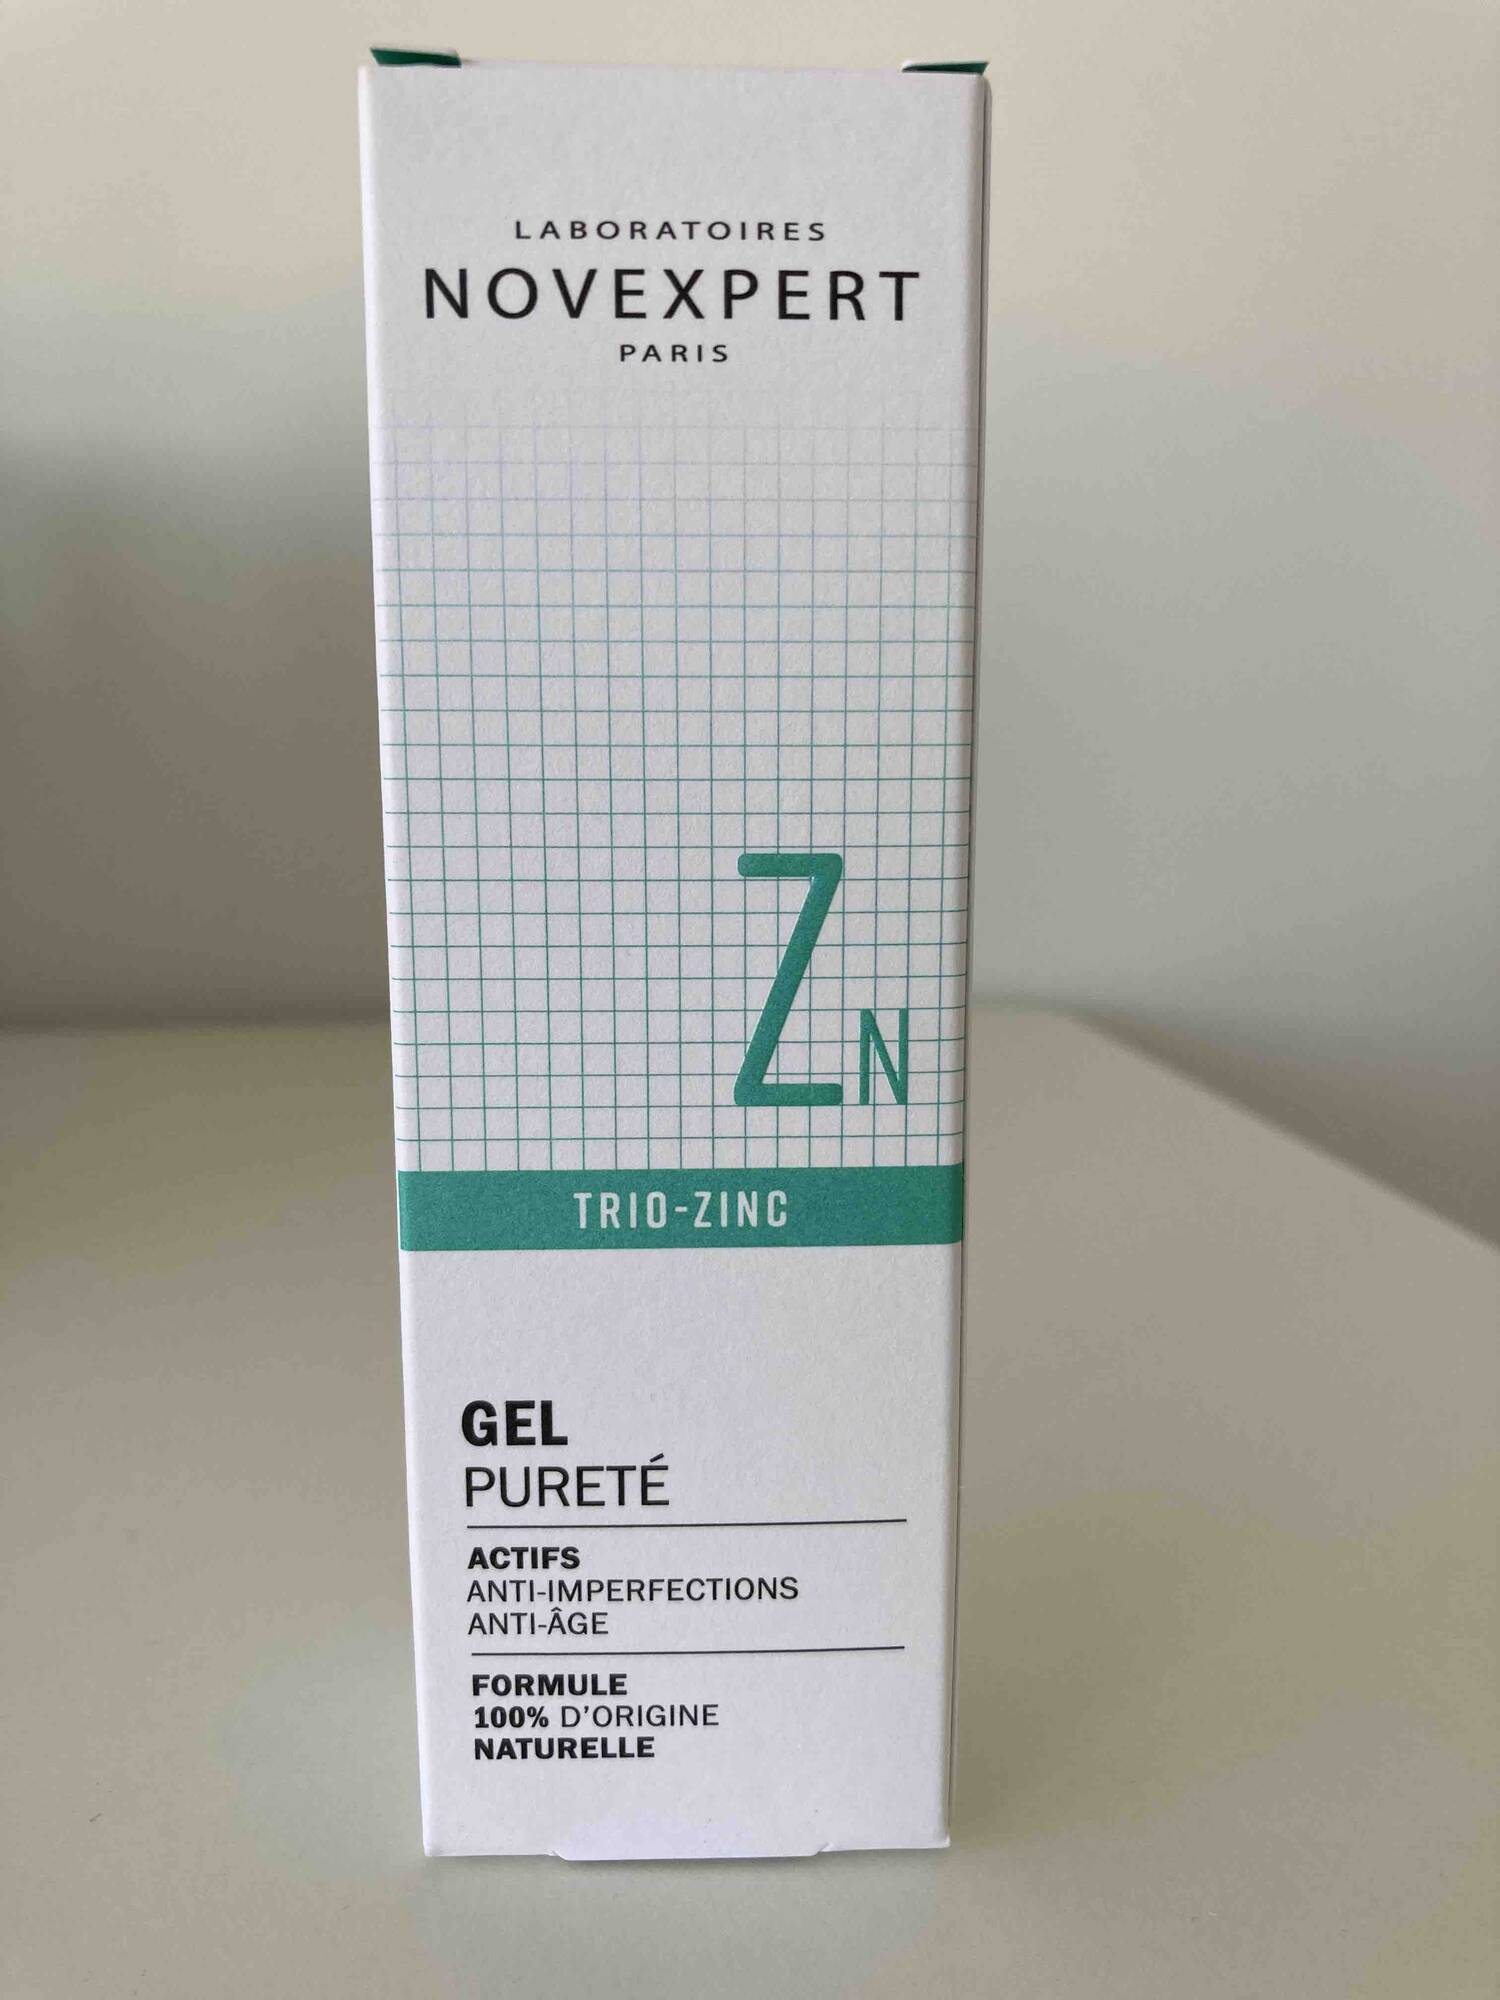 NOVEXPERT - Trio-zinc - Gel pureté Anti-imperfections anti-âge